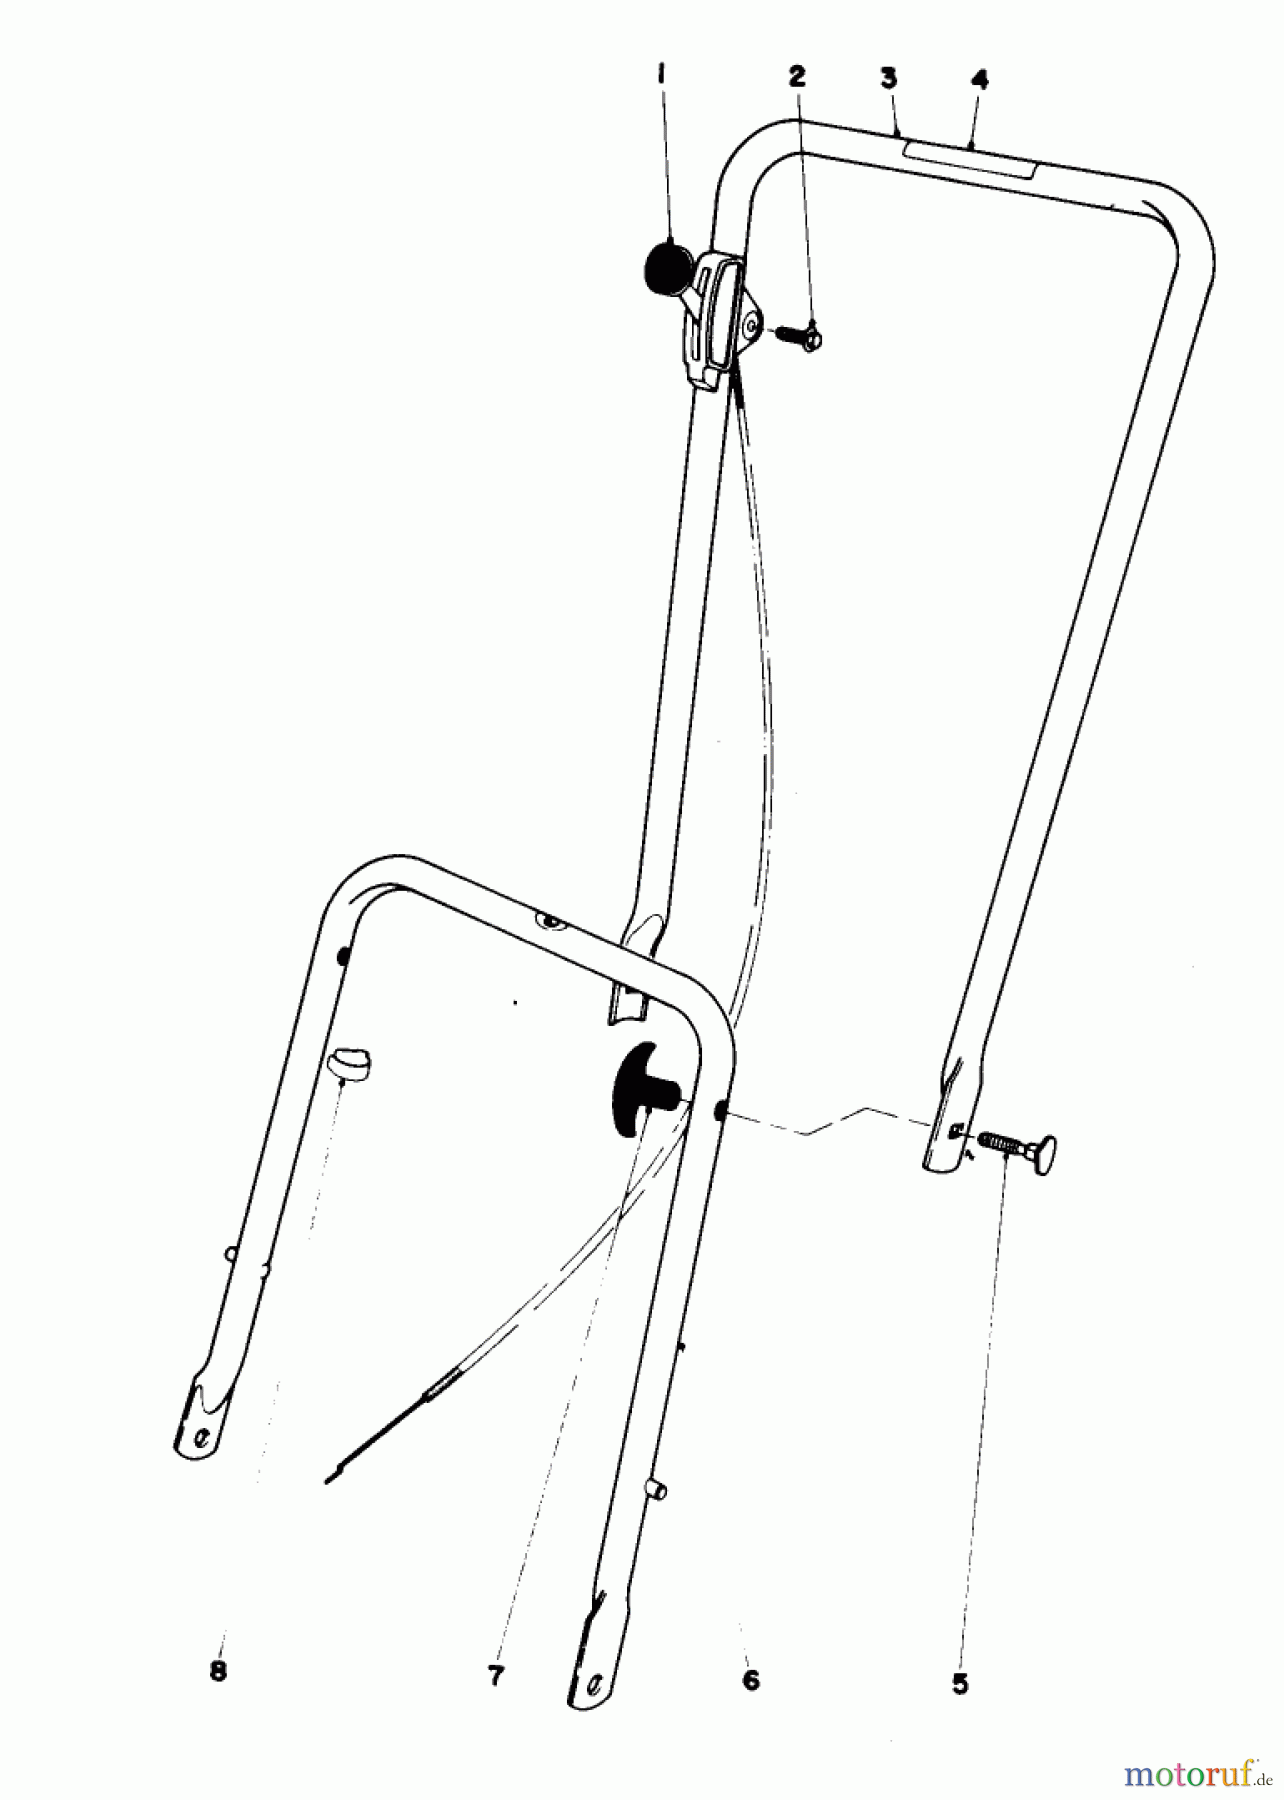  Toro Neu Mowers, Walk-Behind Seite 1 16550 - Toro Lawnmower, 1978 (8000001-8999999) HANDLE ASSEMBLY